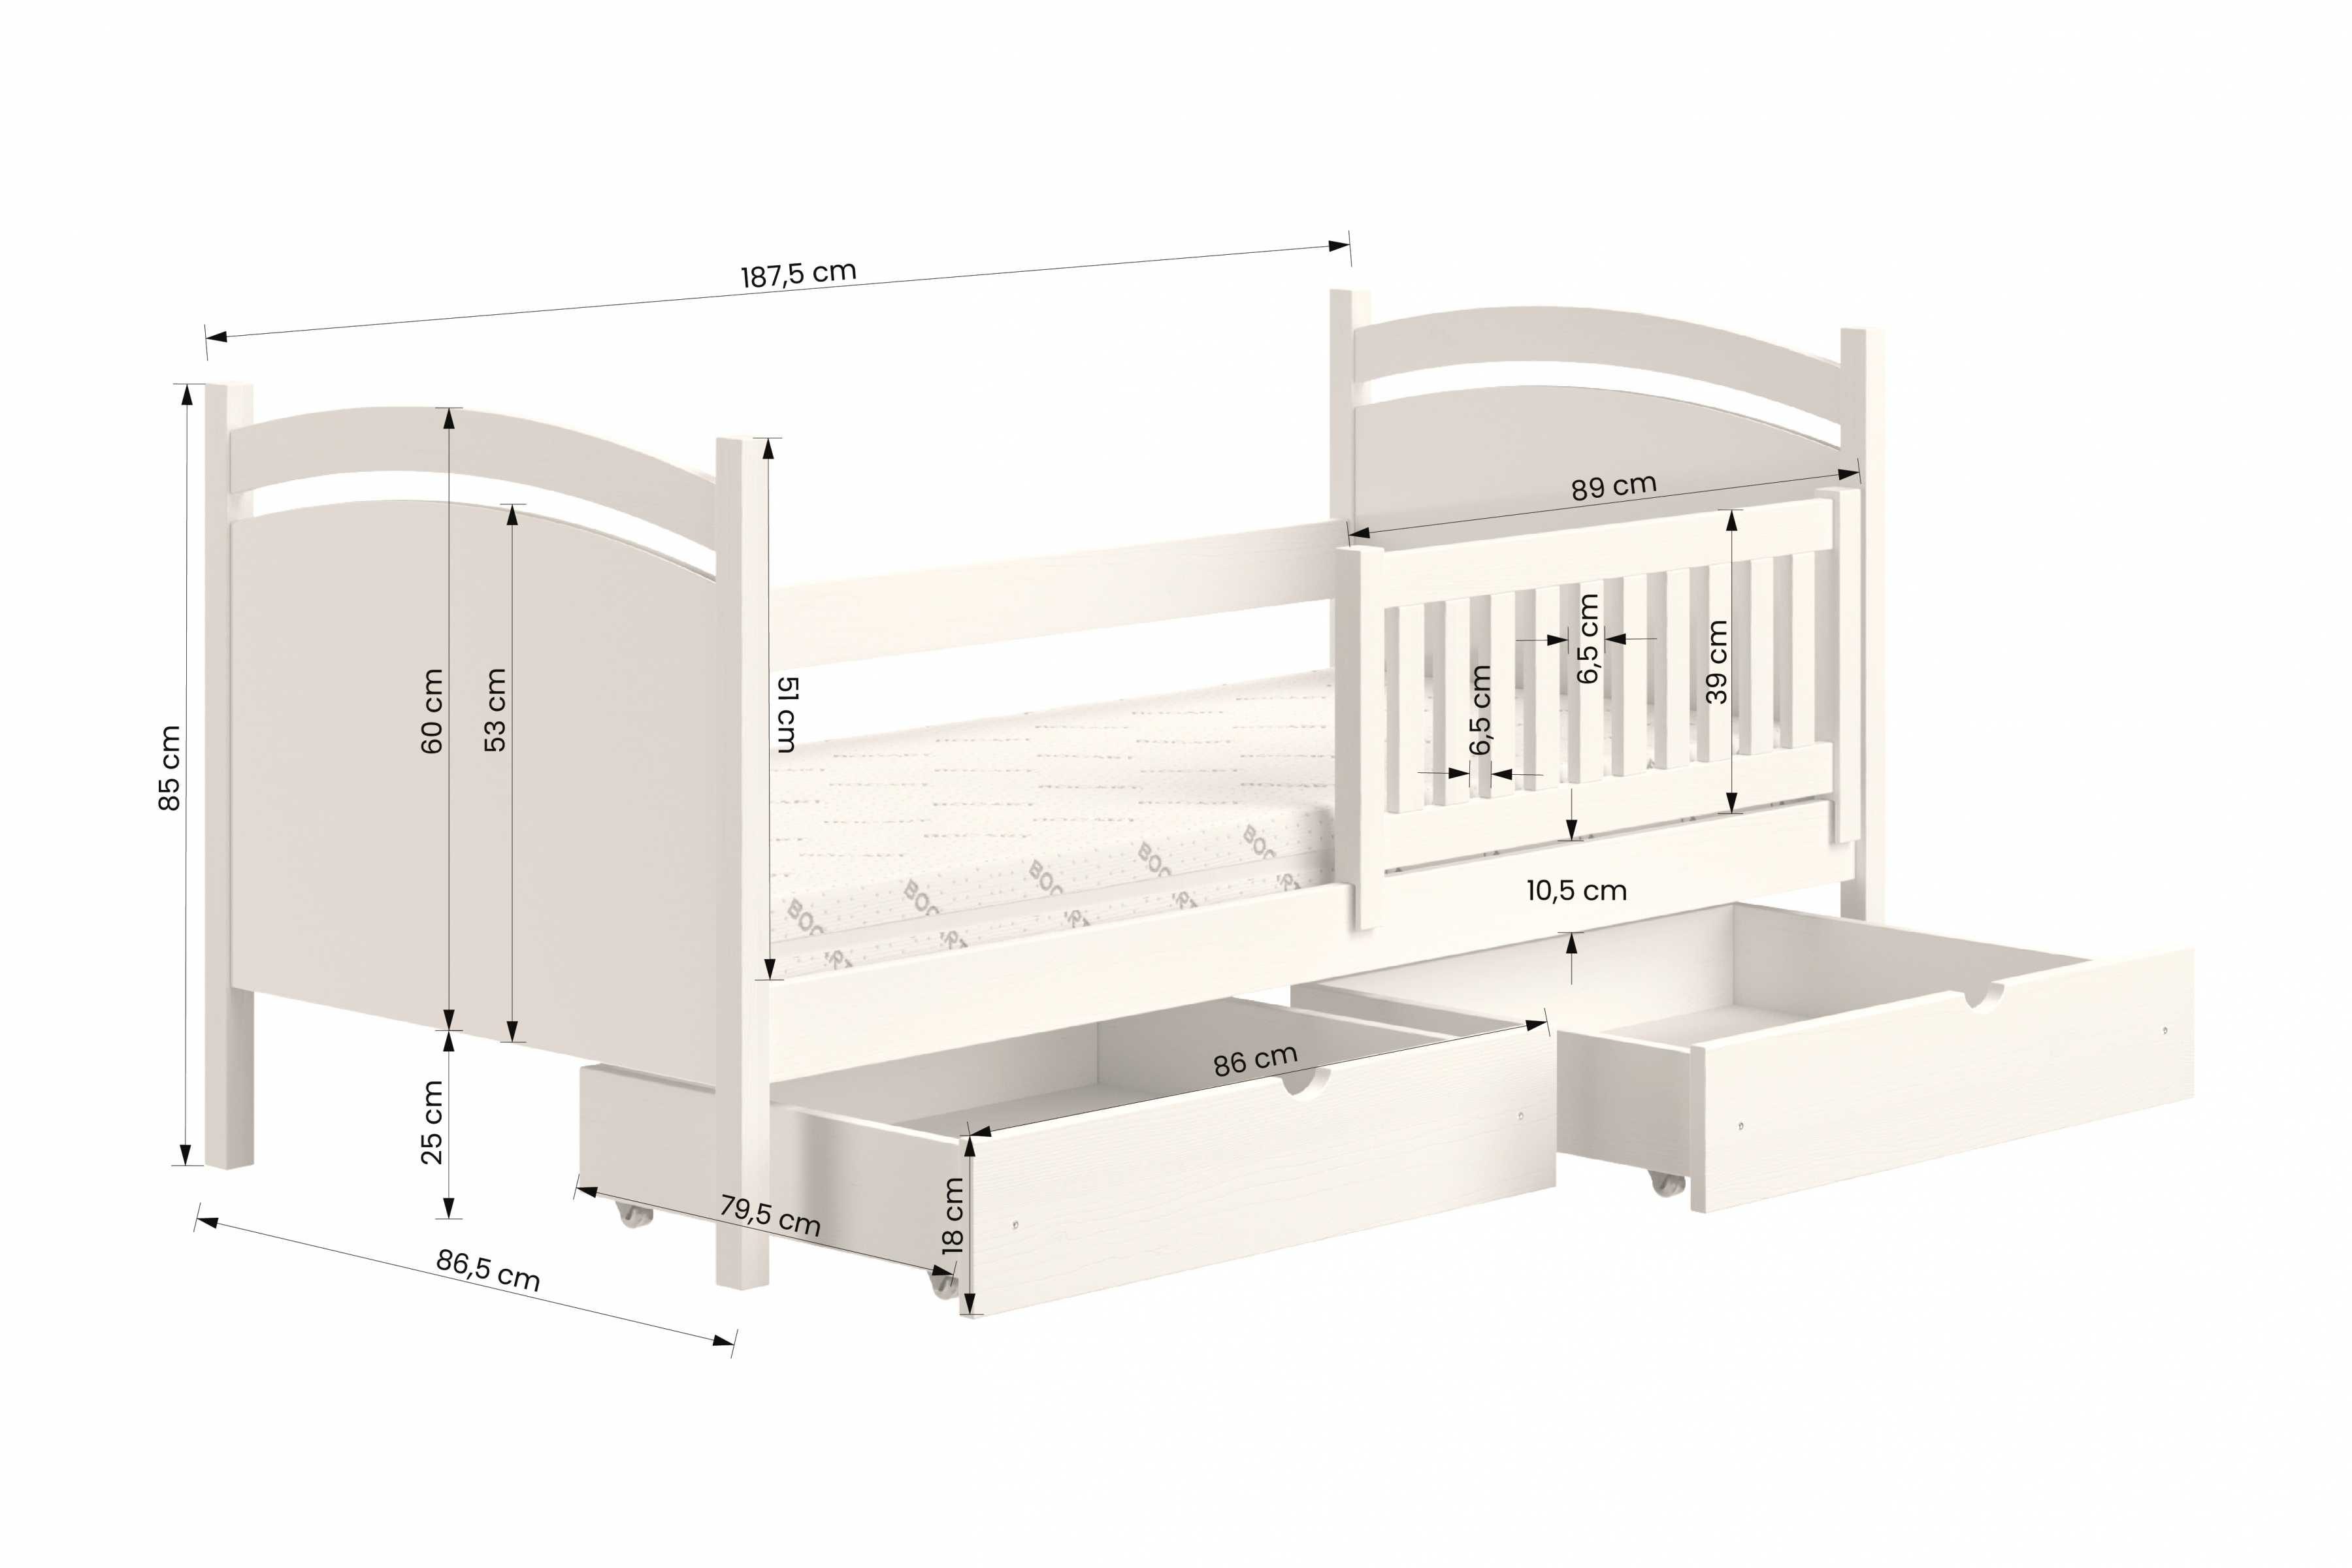 Detská posteľ s tabuľou Amely - Farba Biely, rozmer 80x180 Posteľ dzieciece z tablica suchoscieralna Amely - Rozmery